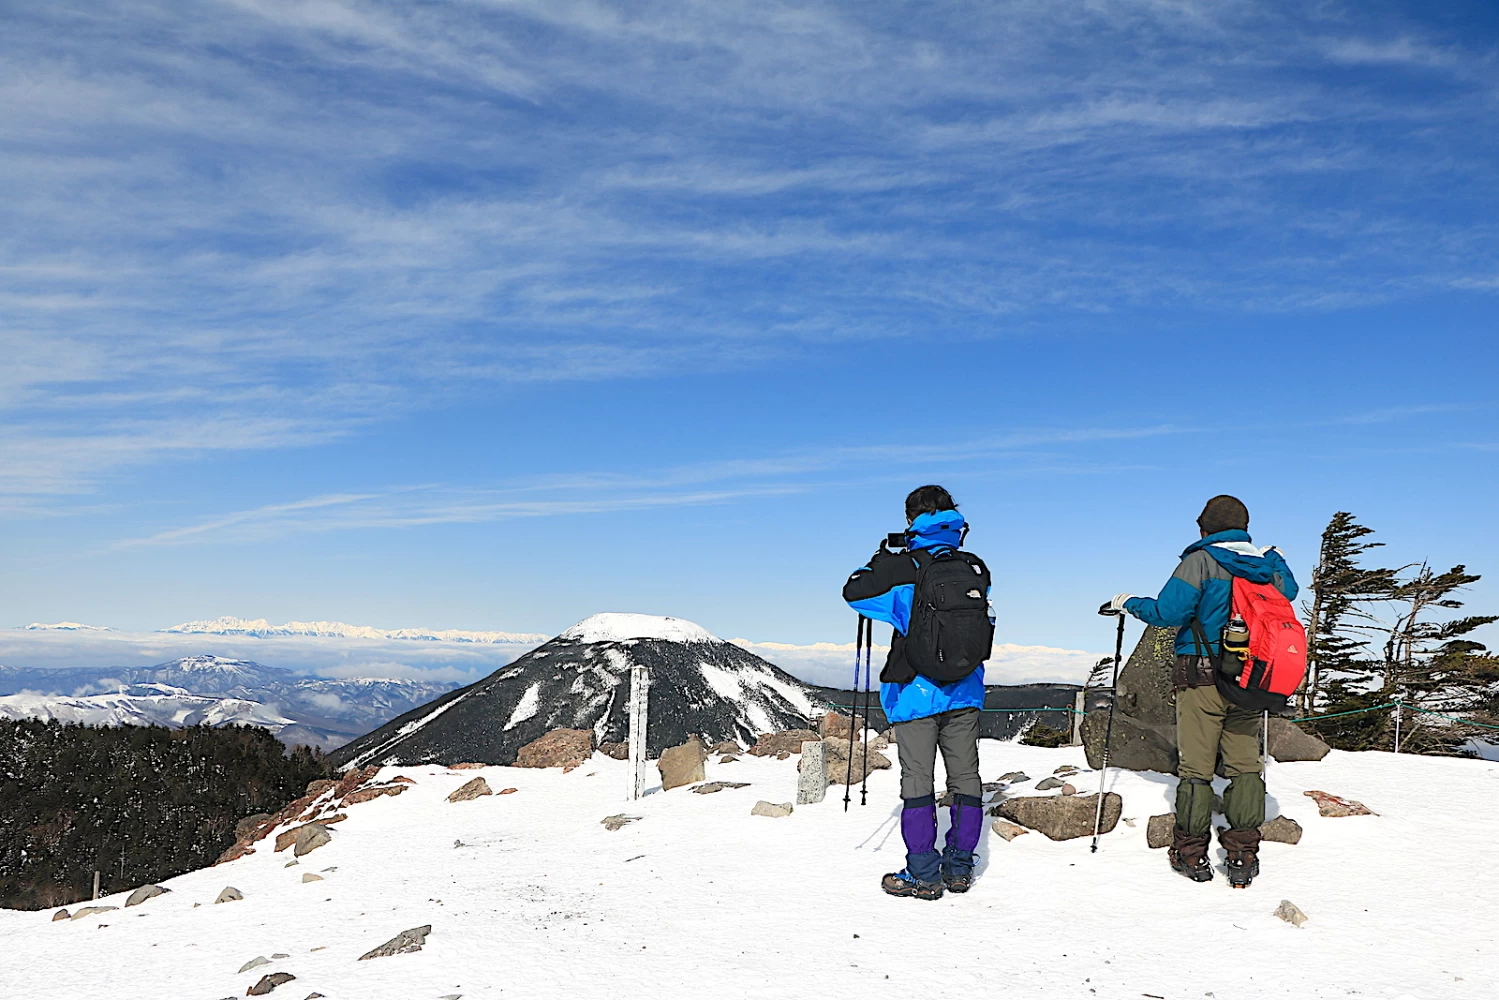 冬の北八ヶ岳 北横岳旅 雪山登山入門にオススメ みんなの旅プラン 旅色 旅行プランは旅色で